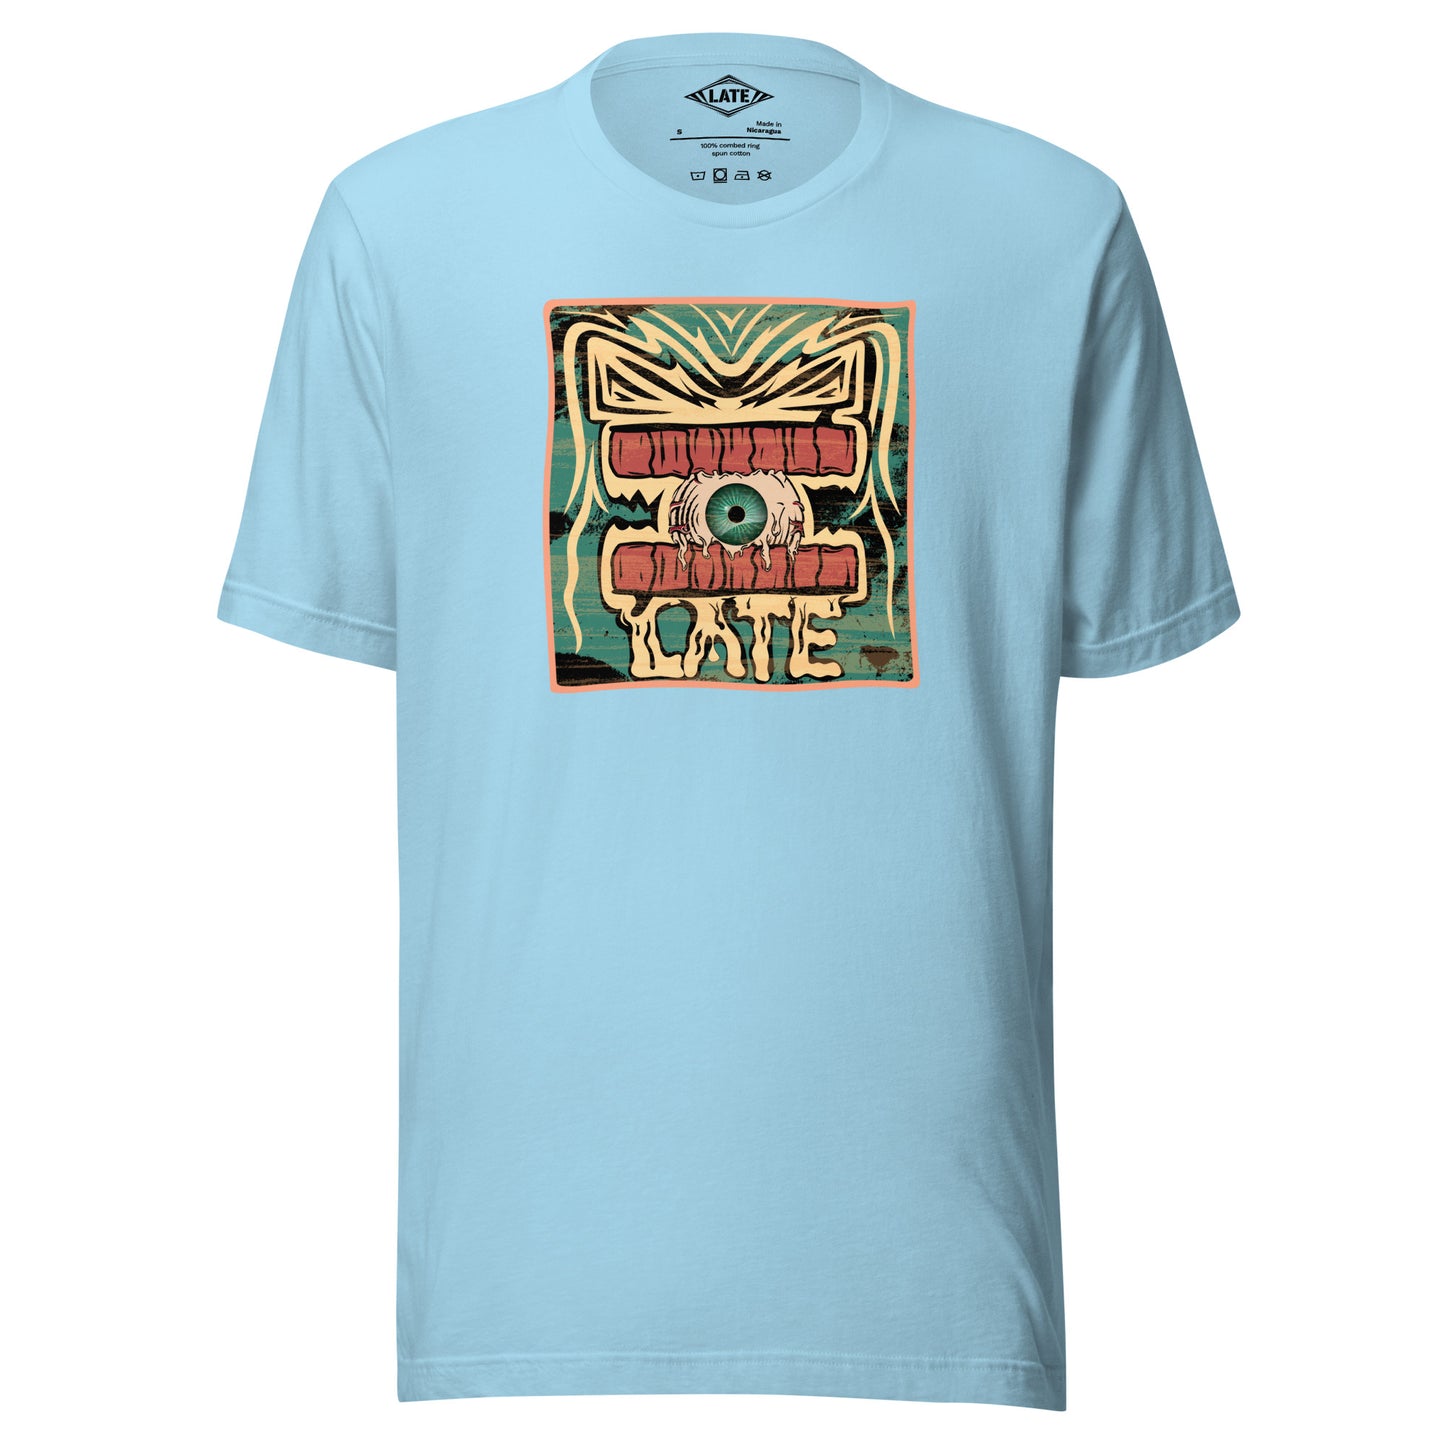 T-shirt rétro skateboarding, design couleur délavée, années 70,80, original dent et oeil skate, tee-shirt unisexe bleu océan